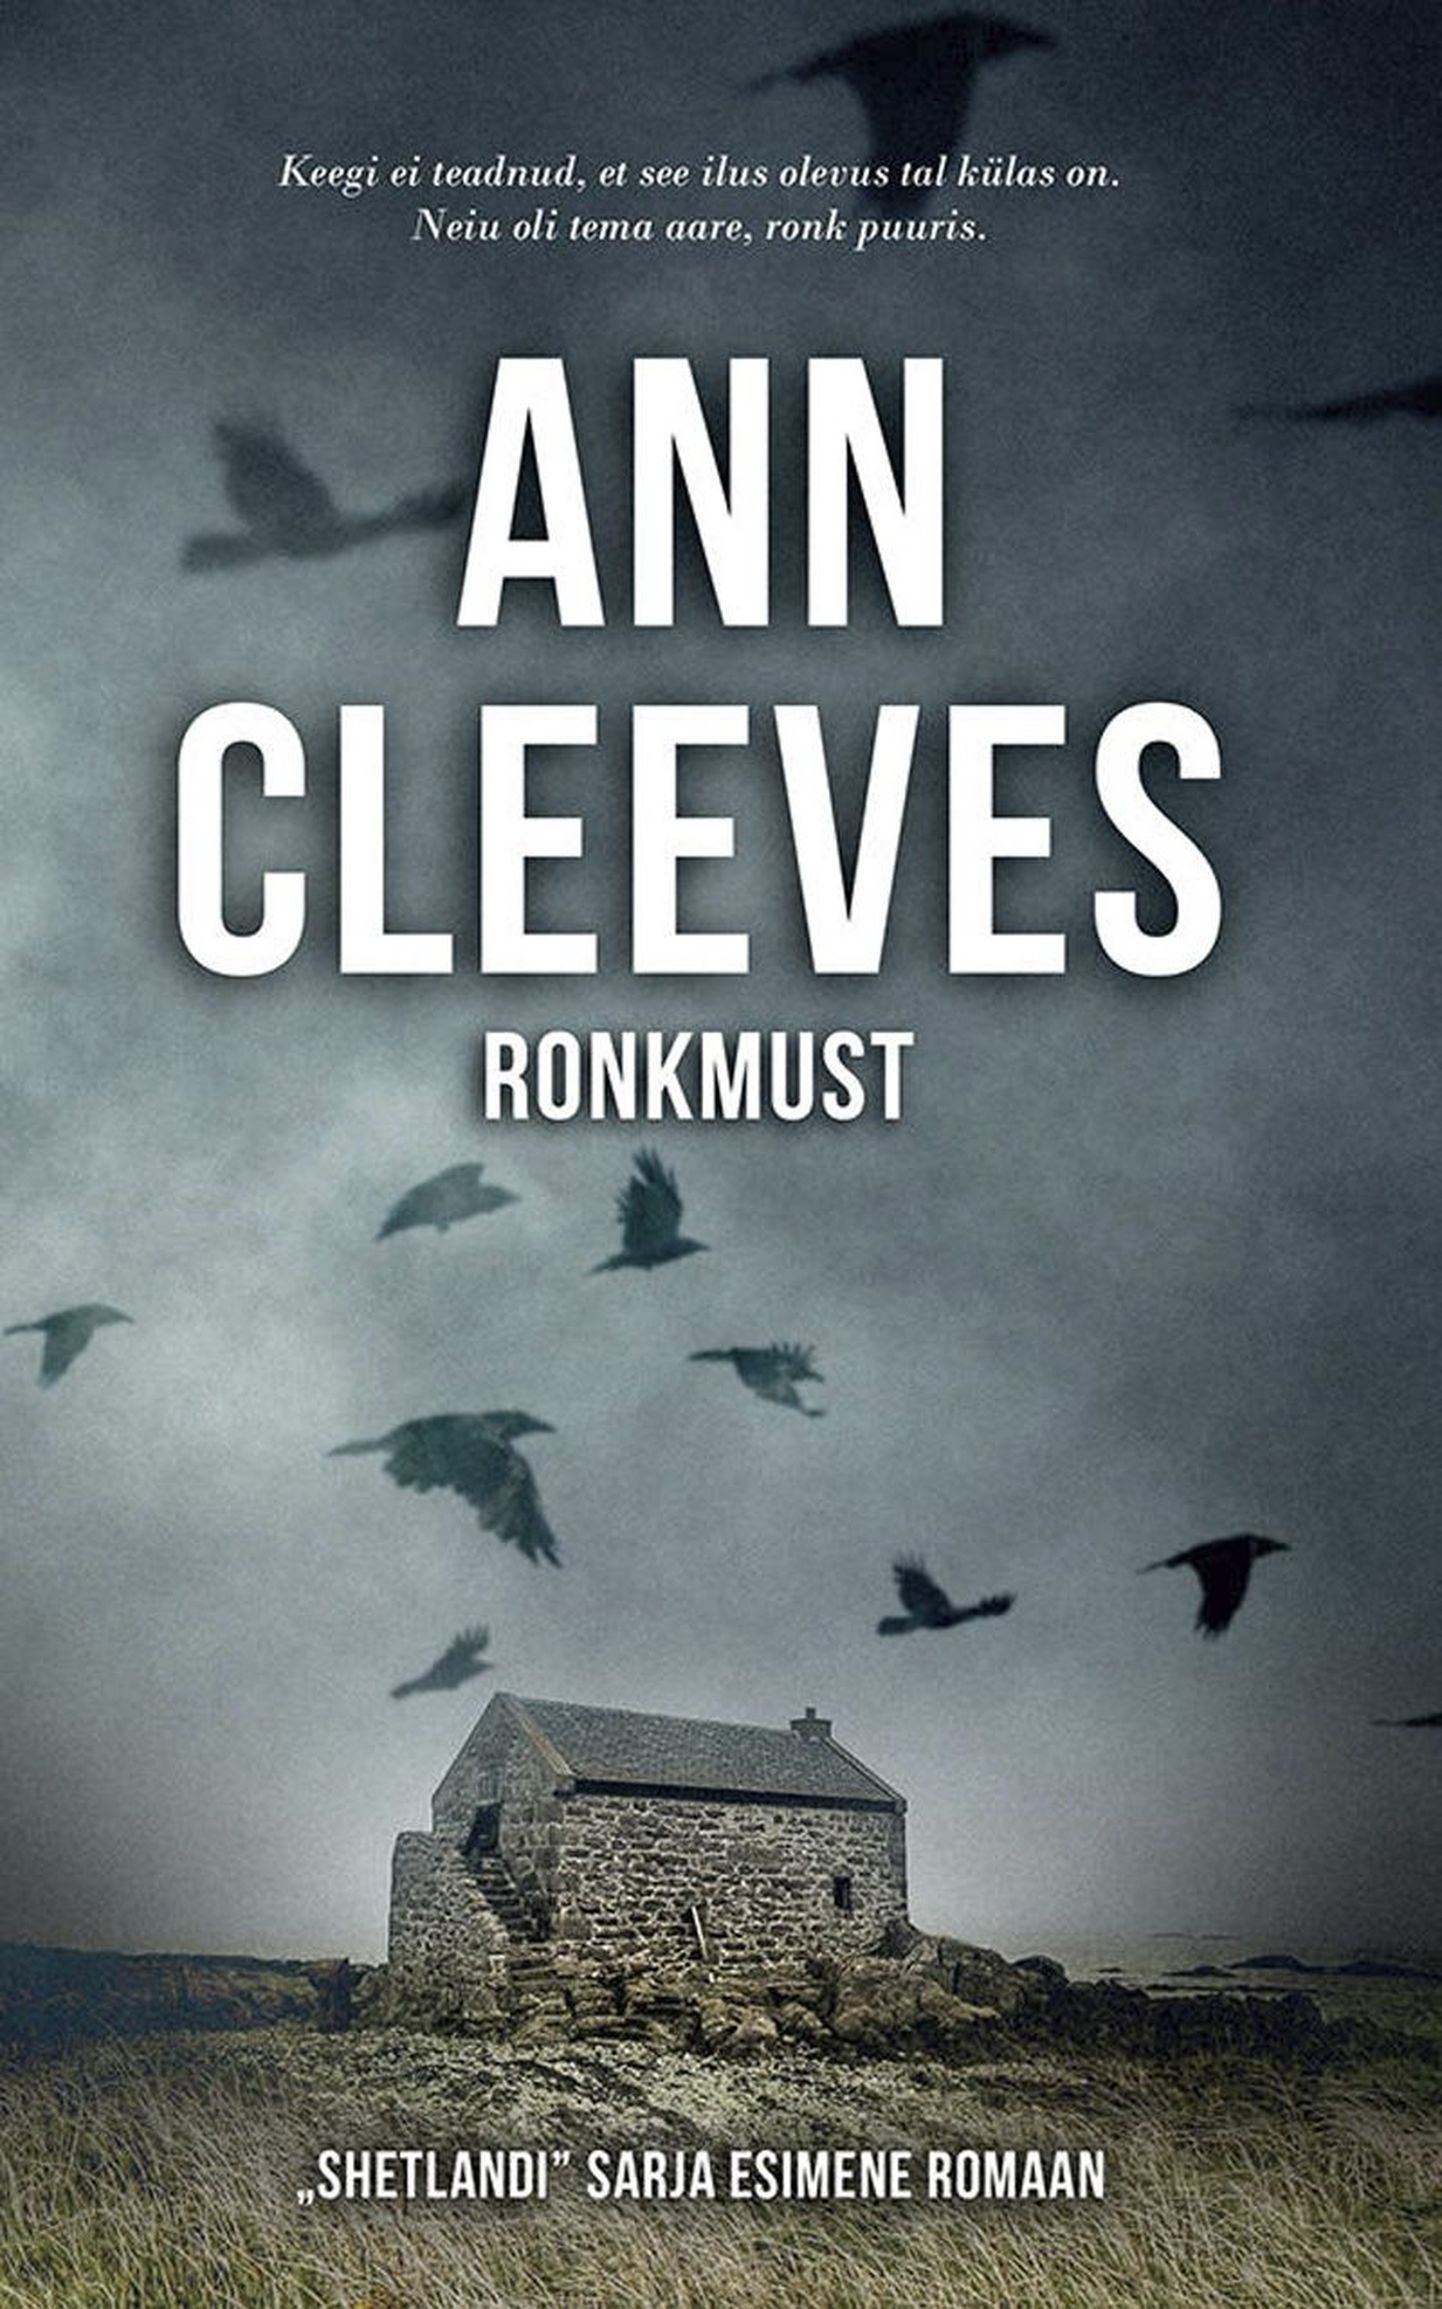 Ann Cleeves “Ronkmust”.